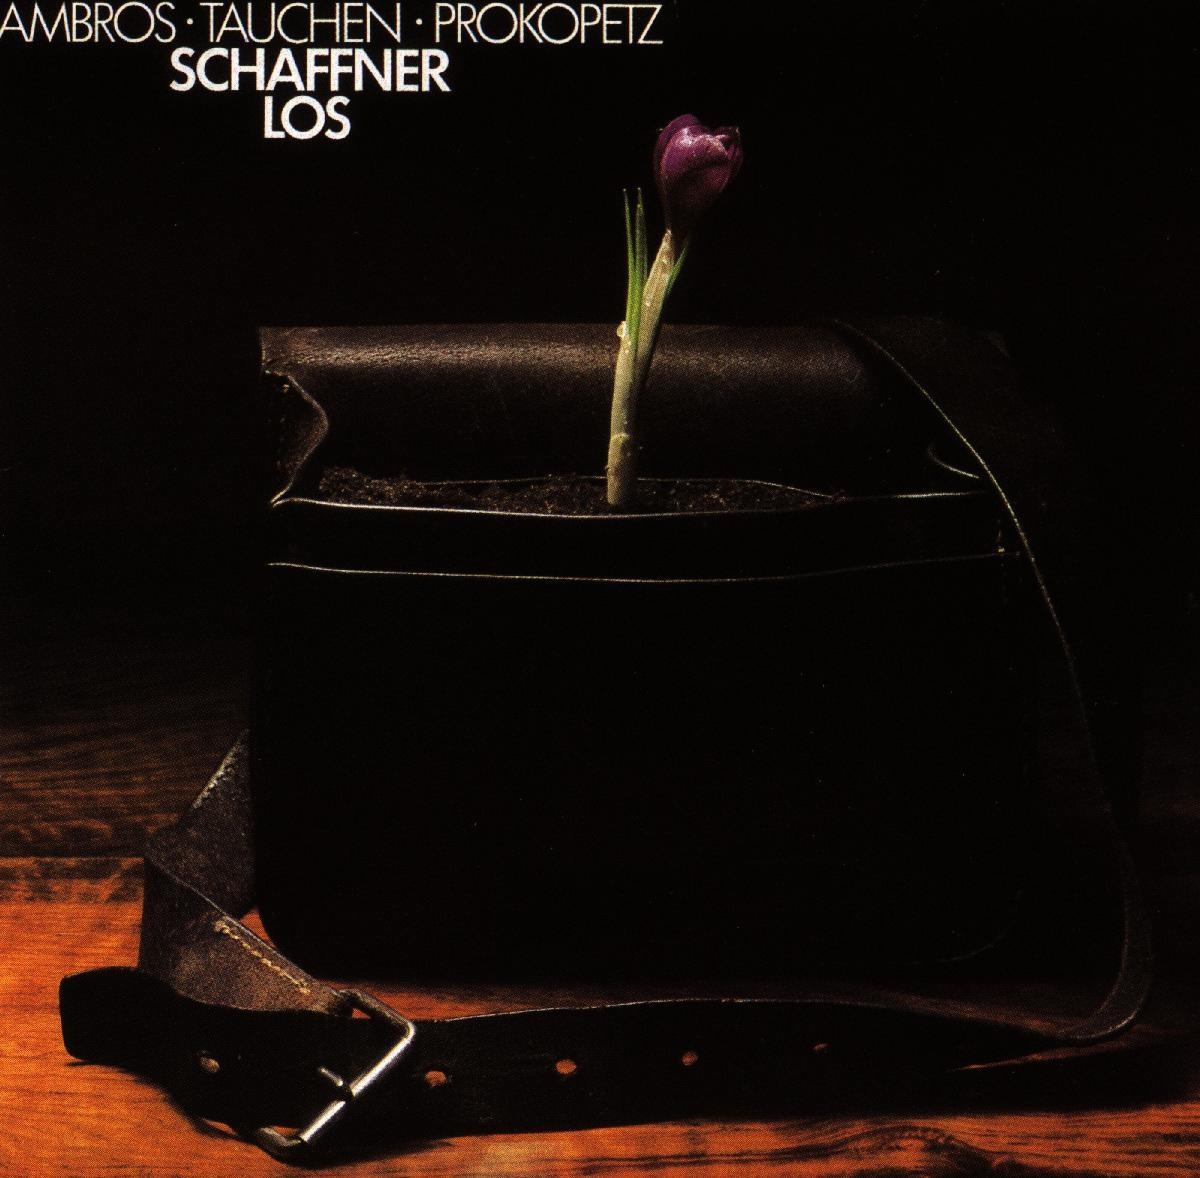 Schaffnerlos - Ambros  Tauchen  Prokopetz. (CD)